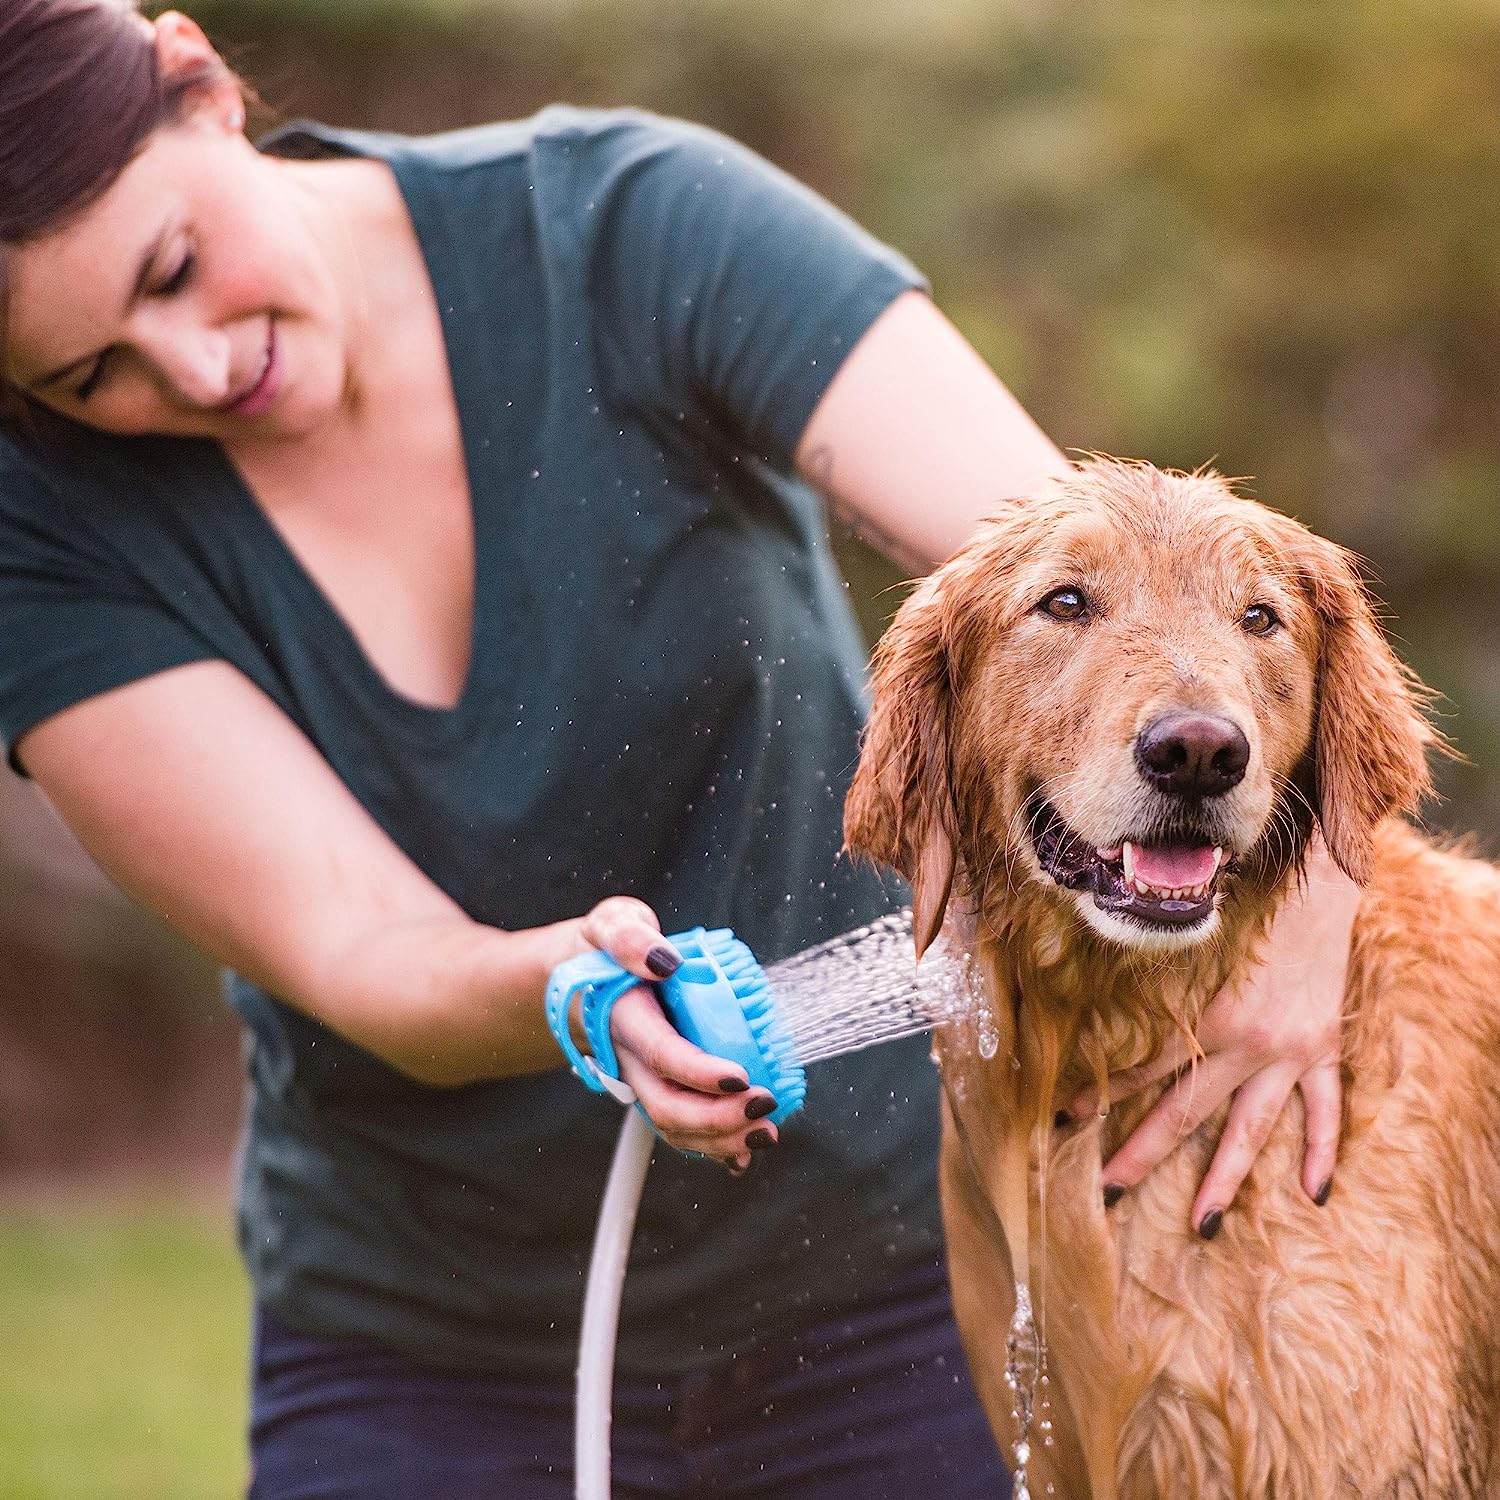 Cepillo ducha de agua a presión para mascotas – NQLN